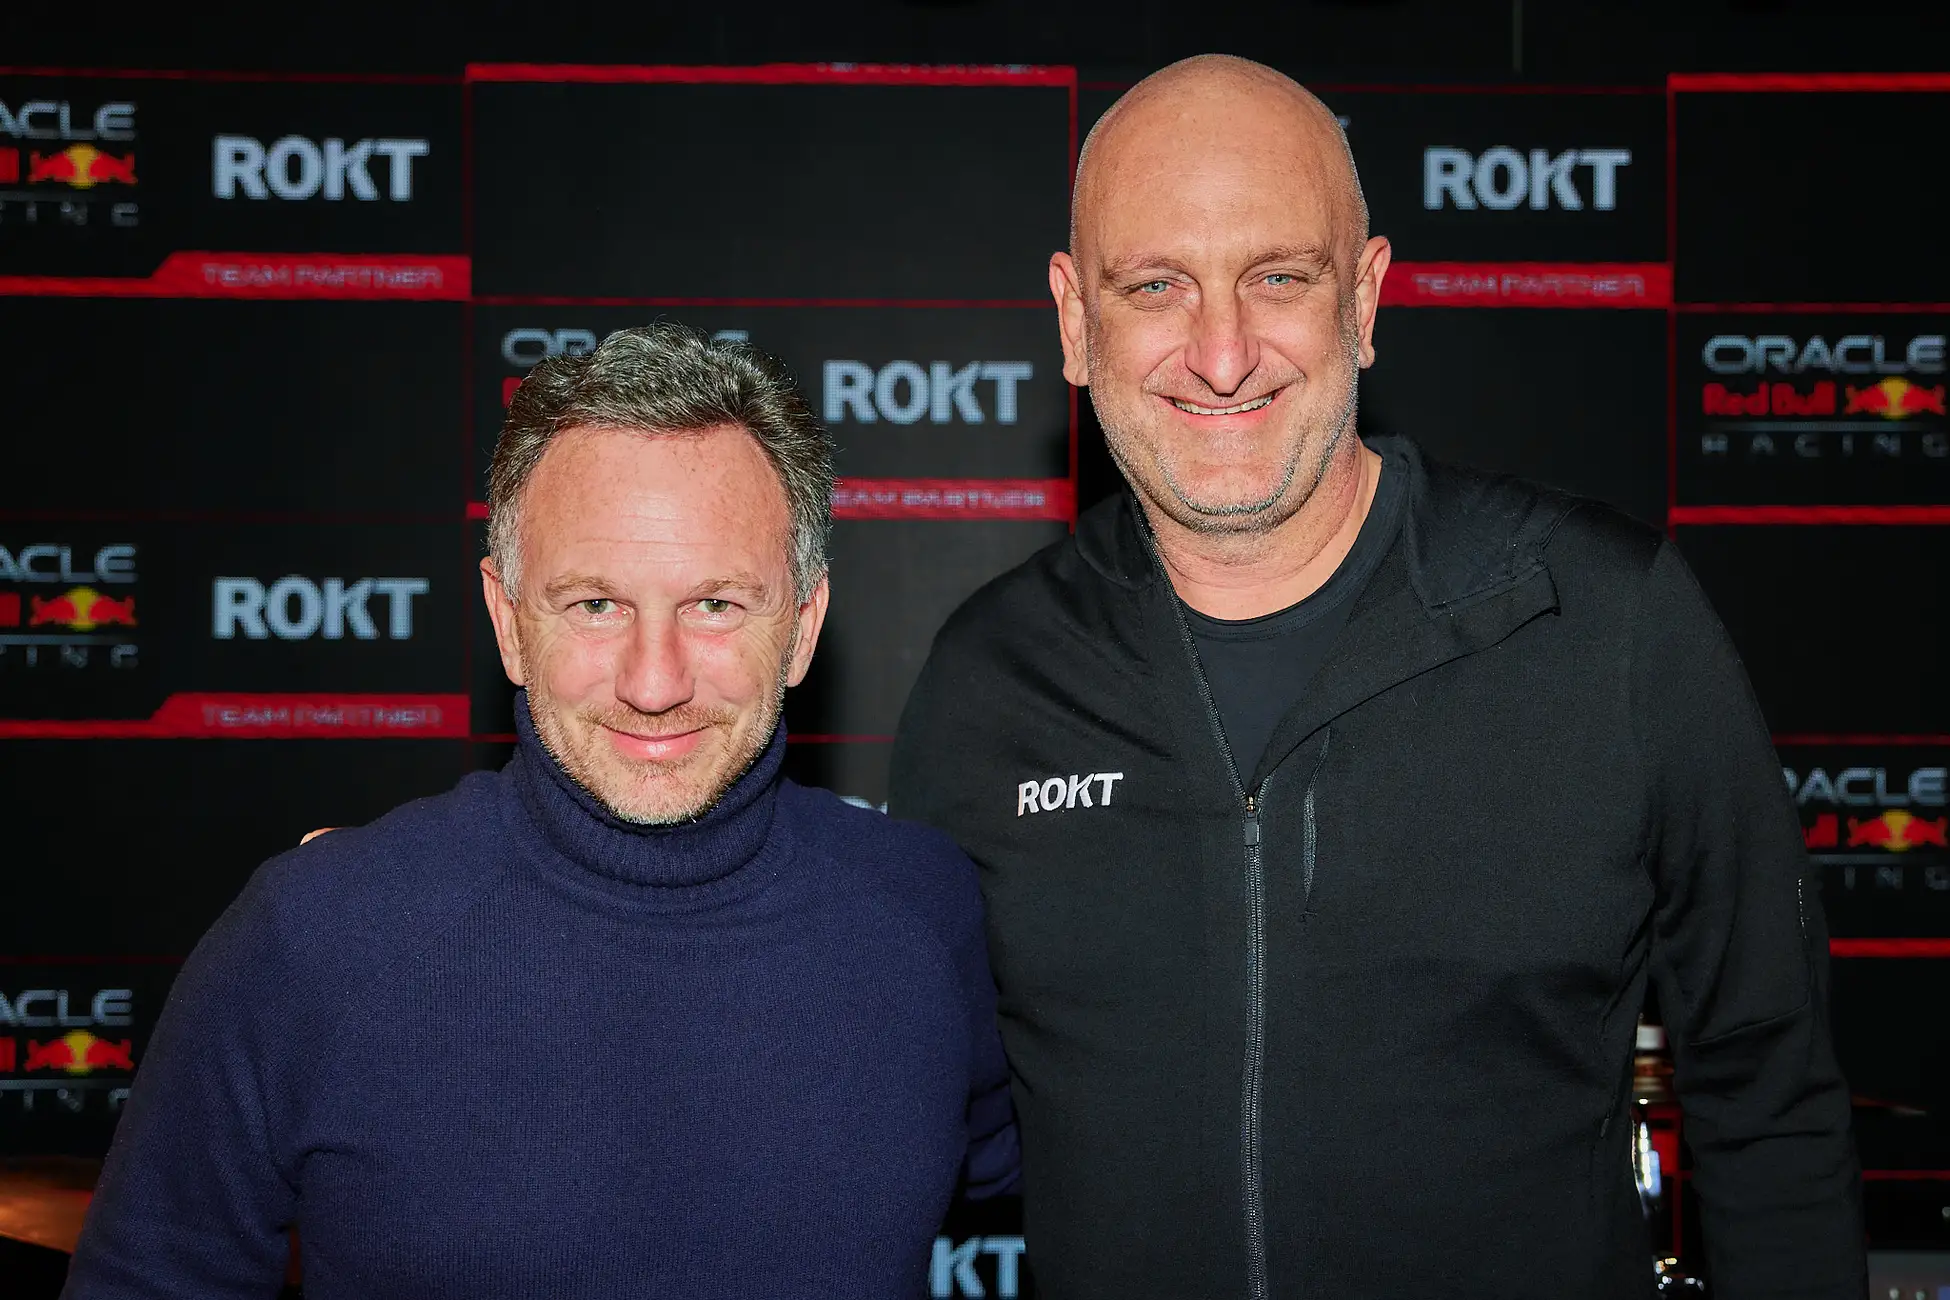 Roktがオラクル・レッドブル・レーシングとパートナーシップ契約を締結、F1における多様性を推進へ